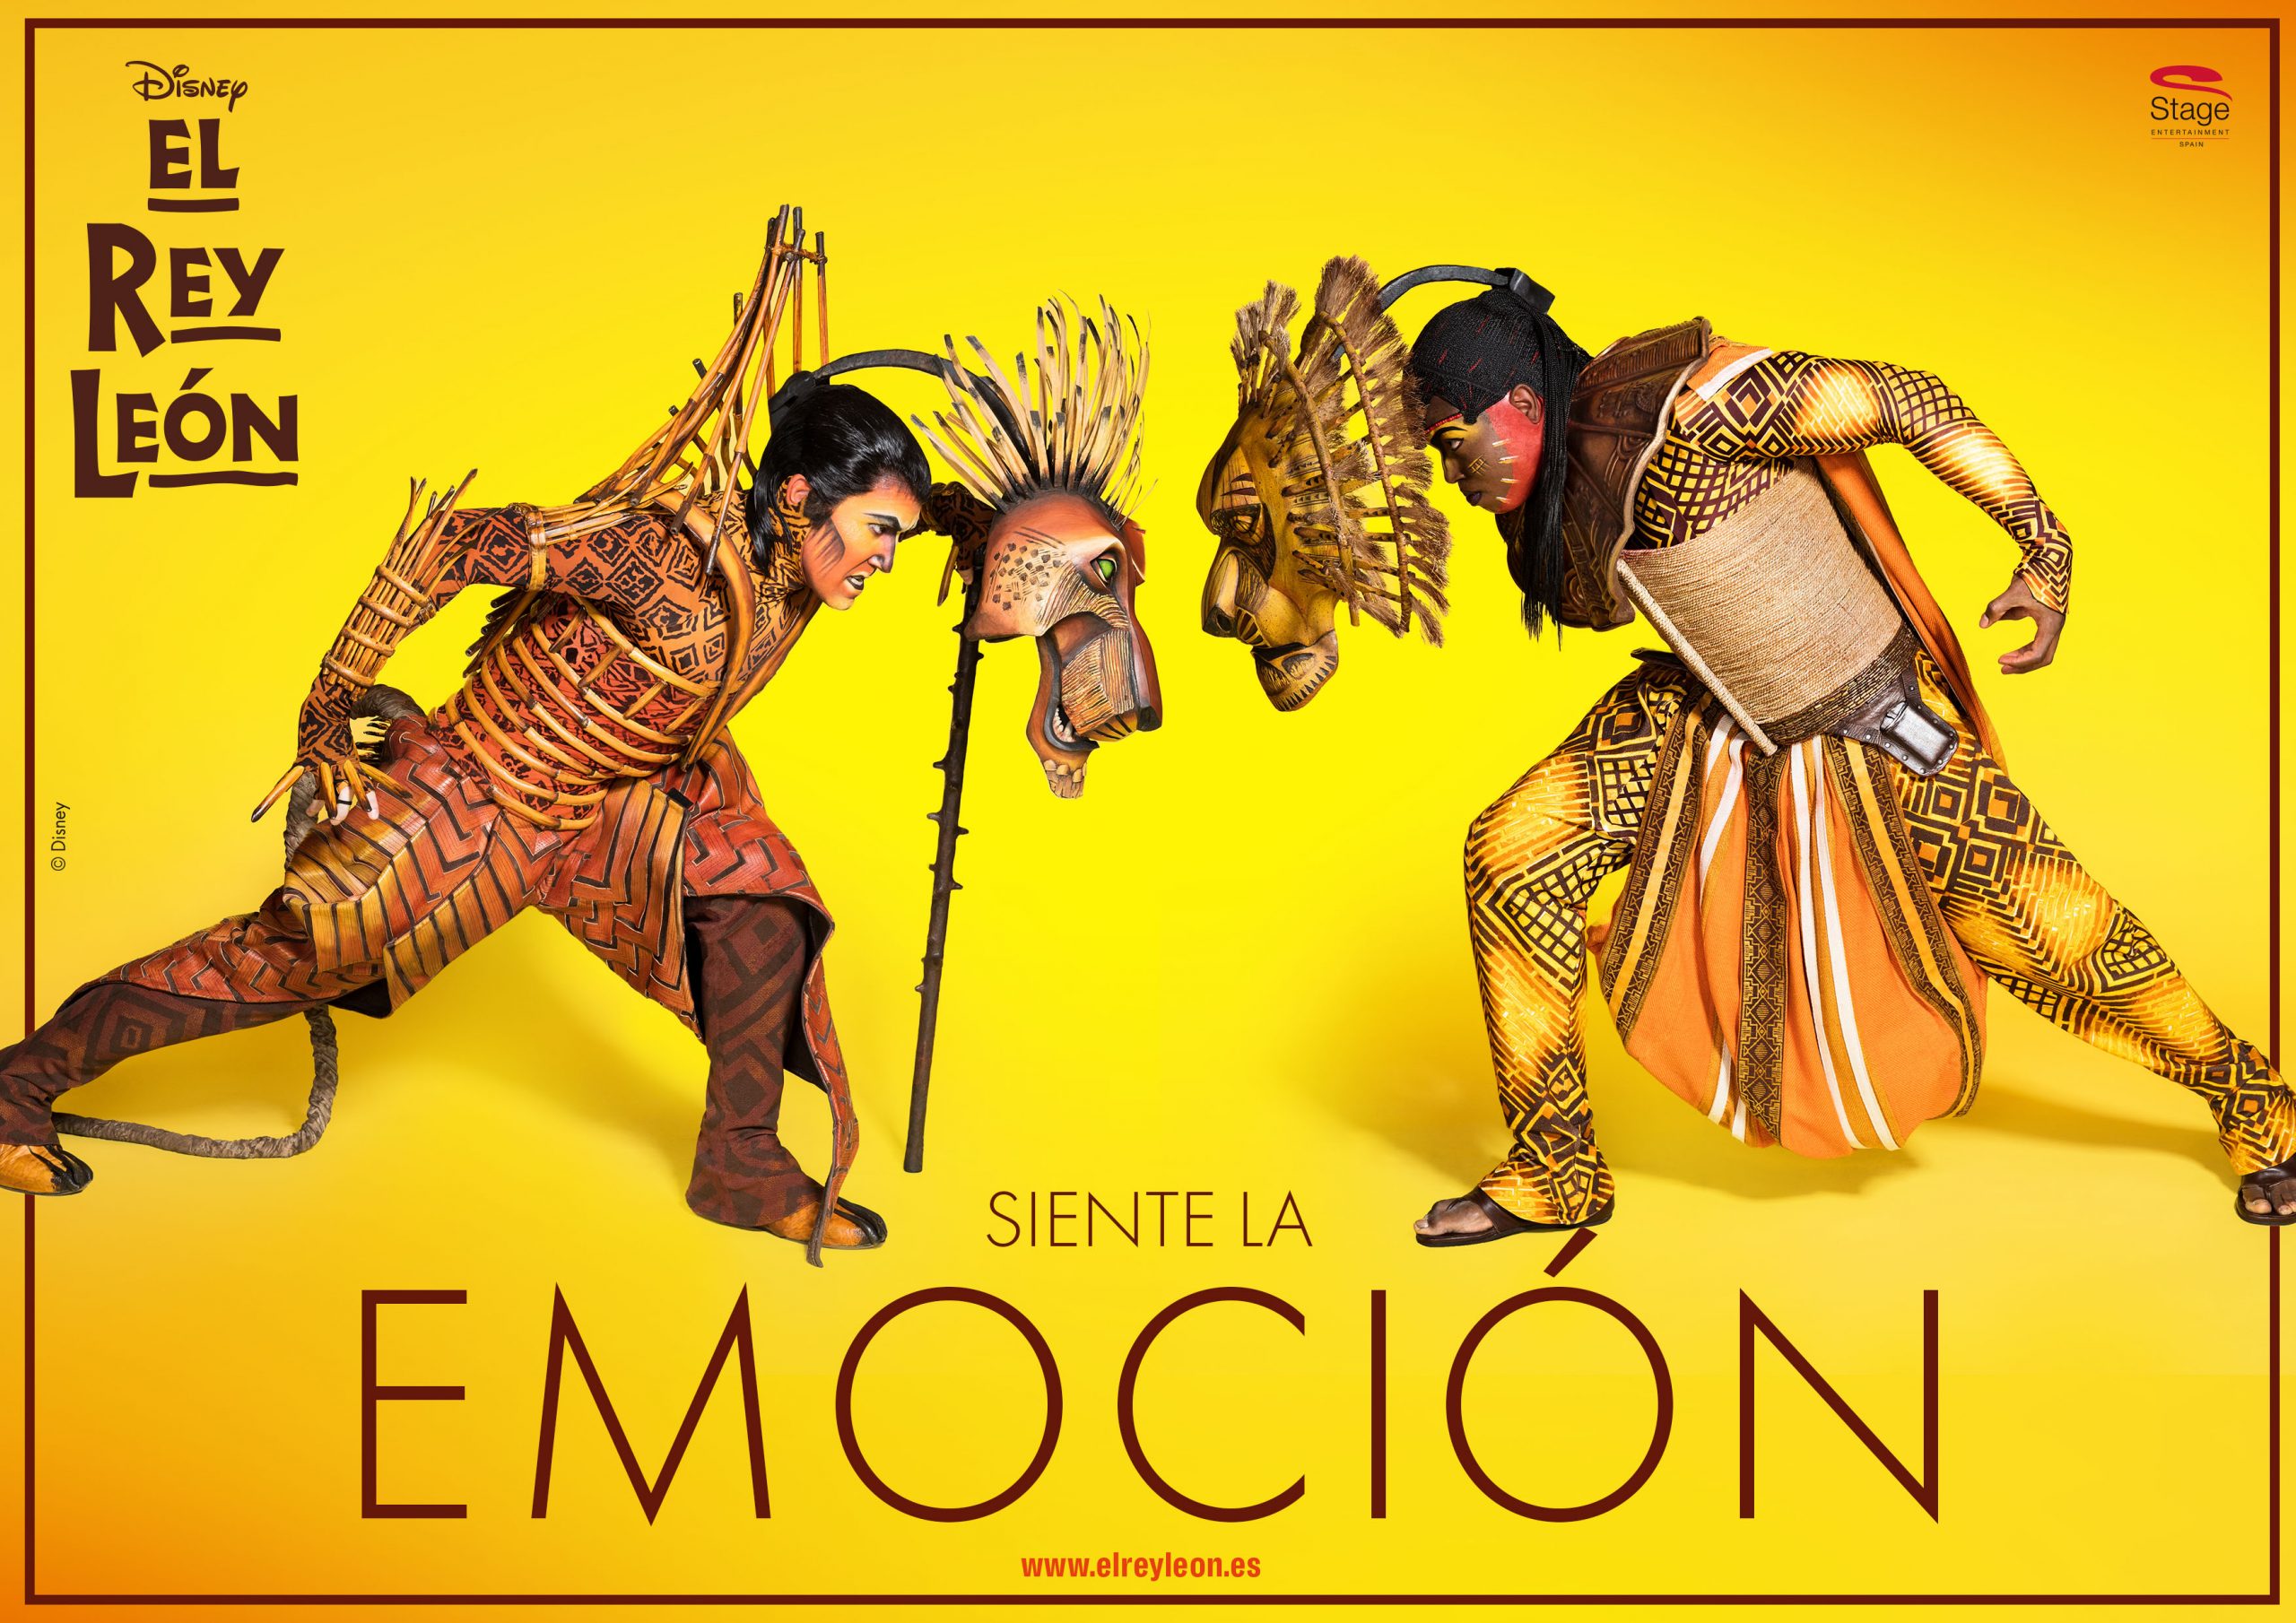 Campaña para Stage Entertainment y Disney, con motivo del 10 aniversario del musical "El Rey León", en España.